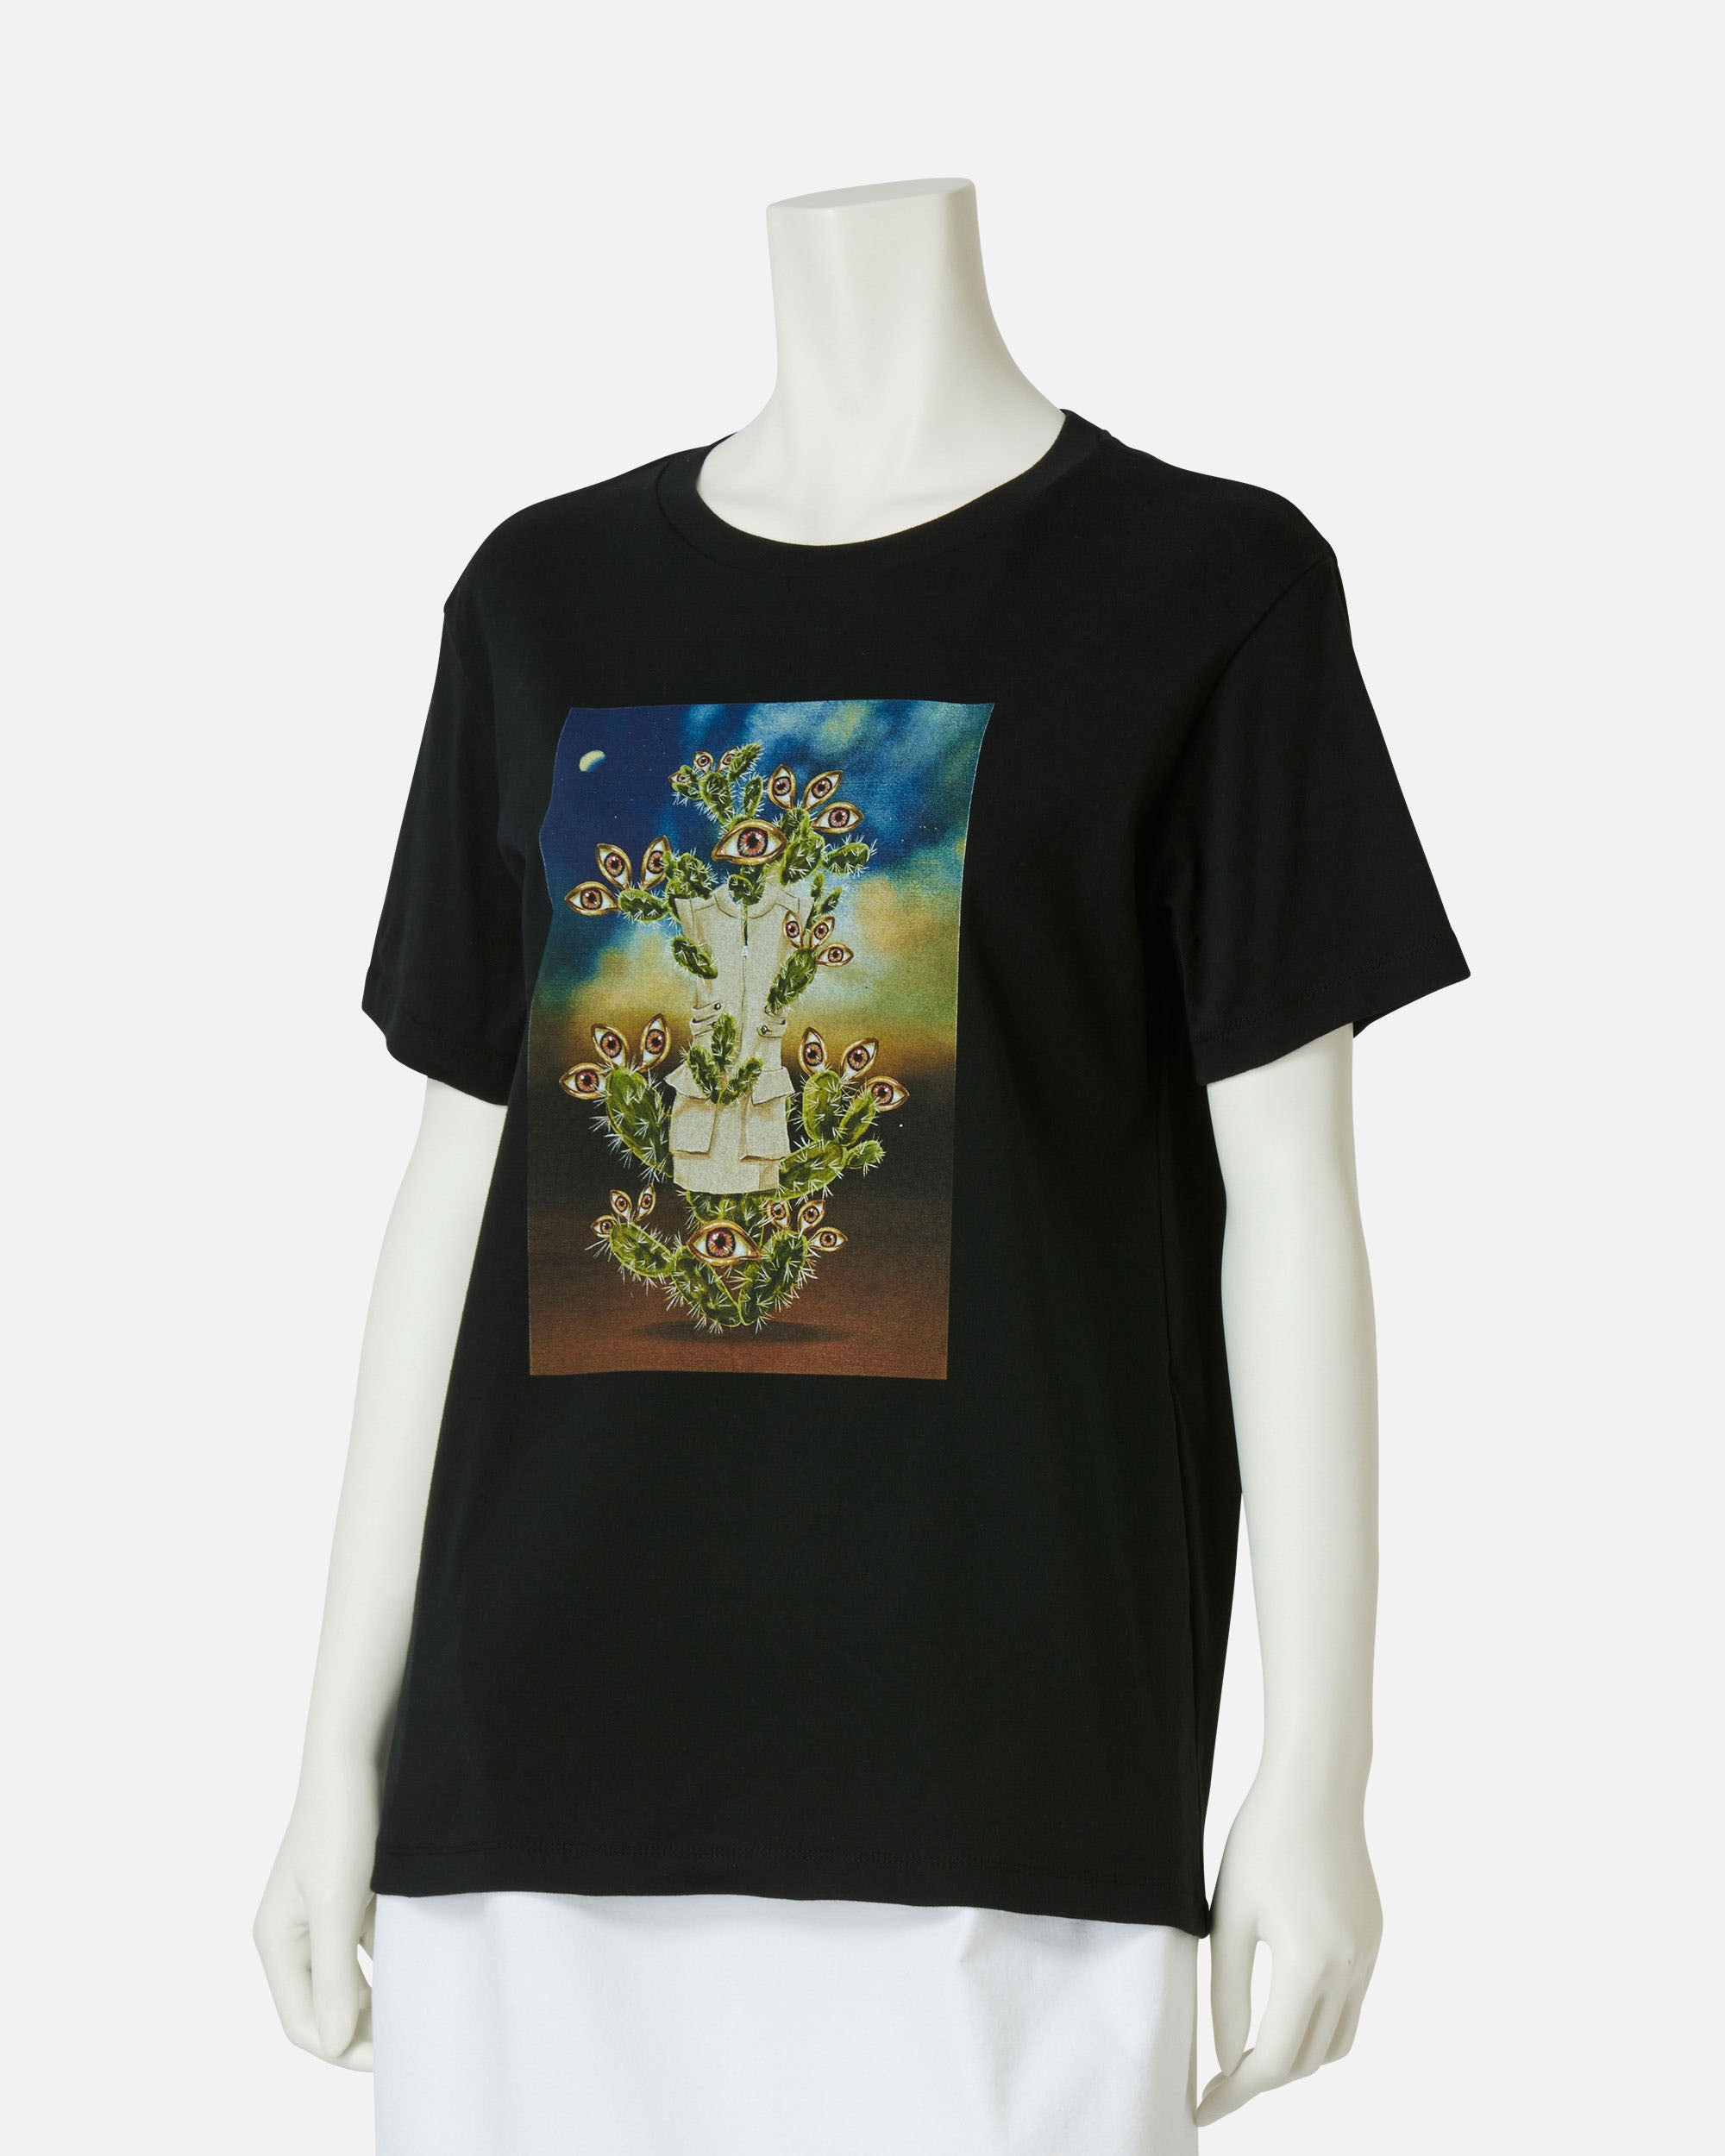 TAE ASHIDA - アーティストコラボプリントTシャツ | ONLINE STORE